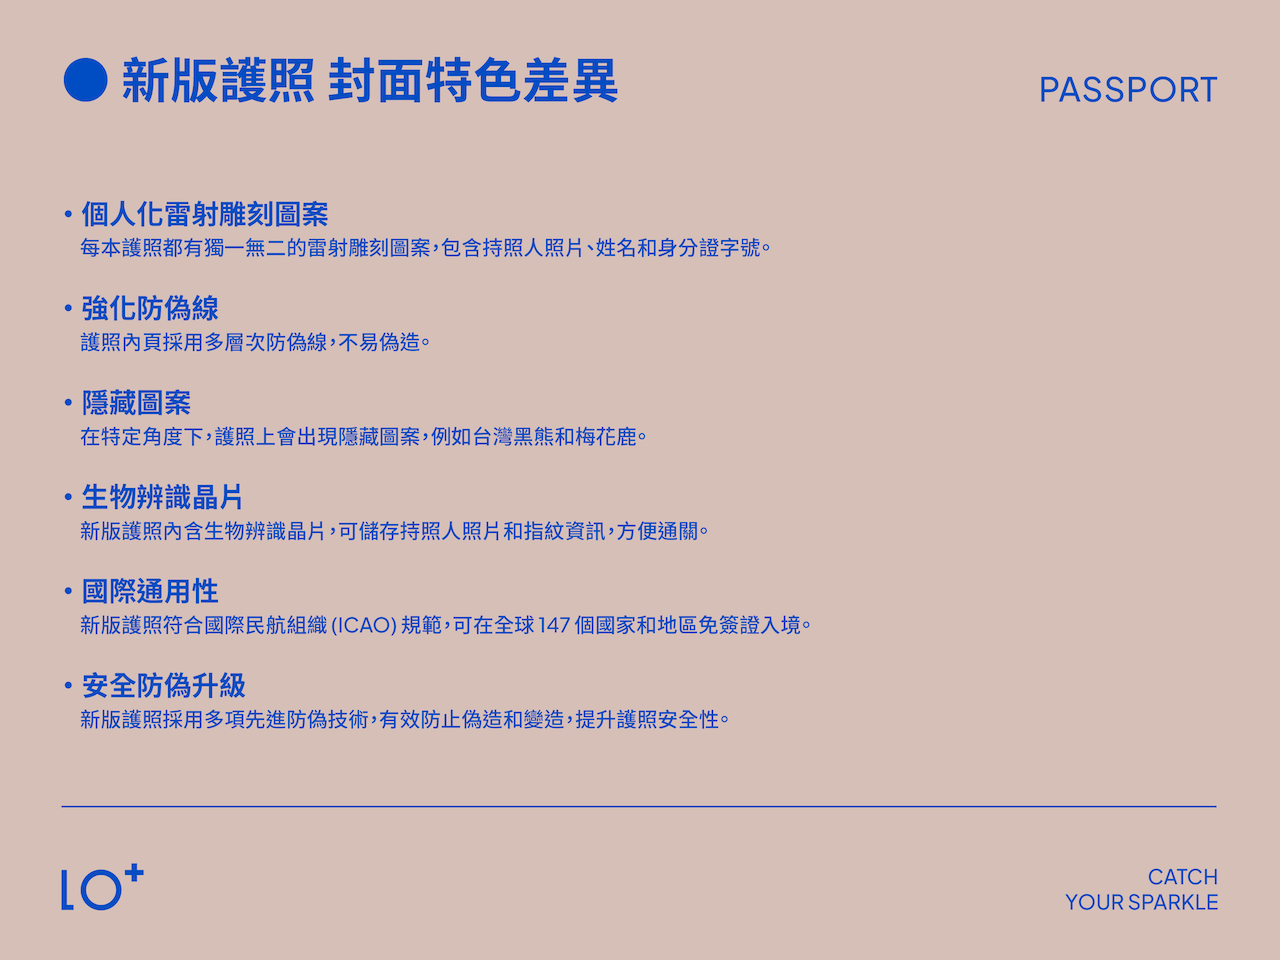 個人化雷射雕刻圖案： 每本護照都有獨一無二的雷射雕刻圖案，包含持照人照片、姓名和身分證字號。 強化防偽線： 護照內頁採用多層次防偽線，不易偽造。 隱藏圖案： 在特定角度下，護照上會出現隱藏圖案，例如台灣黑熊和梅花鹿。 生物辨識晶片： 新版護照內含生物辨識晶片，可儲存持照人照片和指紋資訊，方便通關。 國際通用性： 新版護照符合國際民航組織 (ICAO) 規範，可在全球 147 個國家和地區免簽證入境。  安全防偽升級： 新版護照採用多項先進防偽技術，有效防止偽造和變造，提升護照安全性。